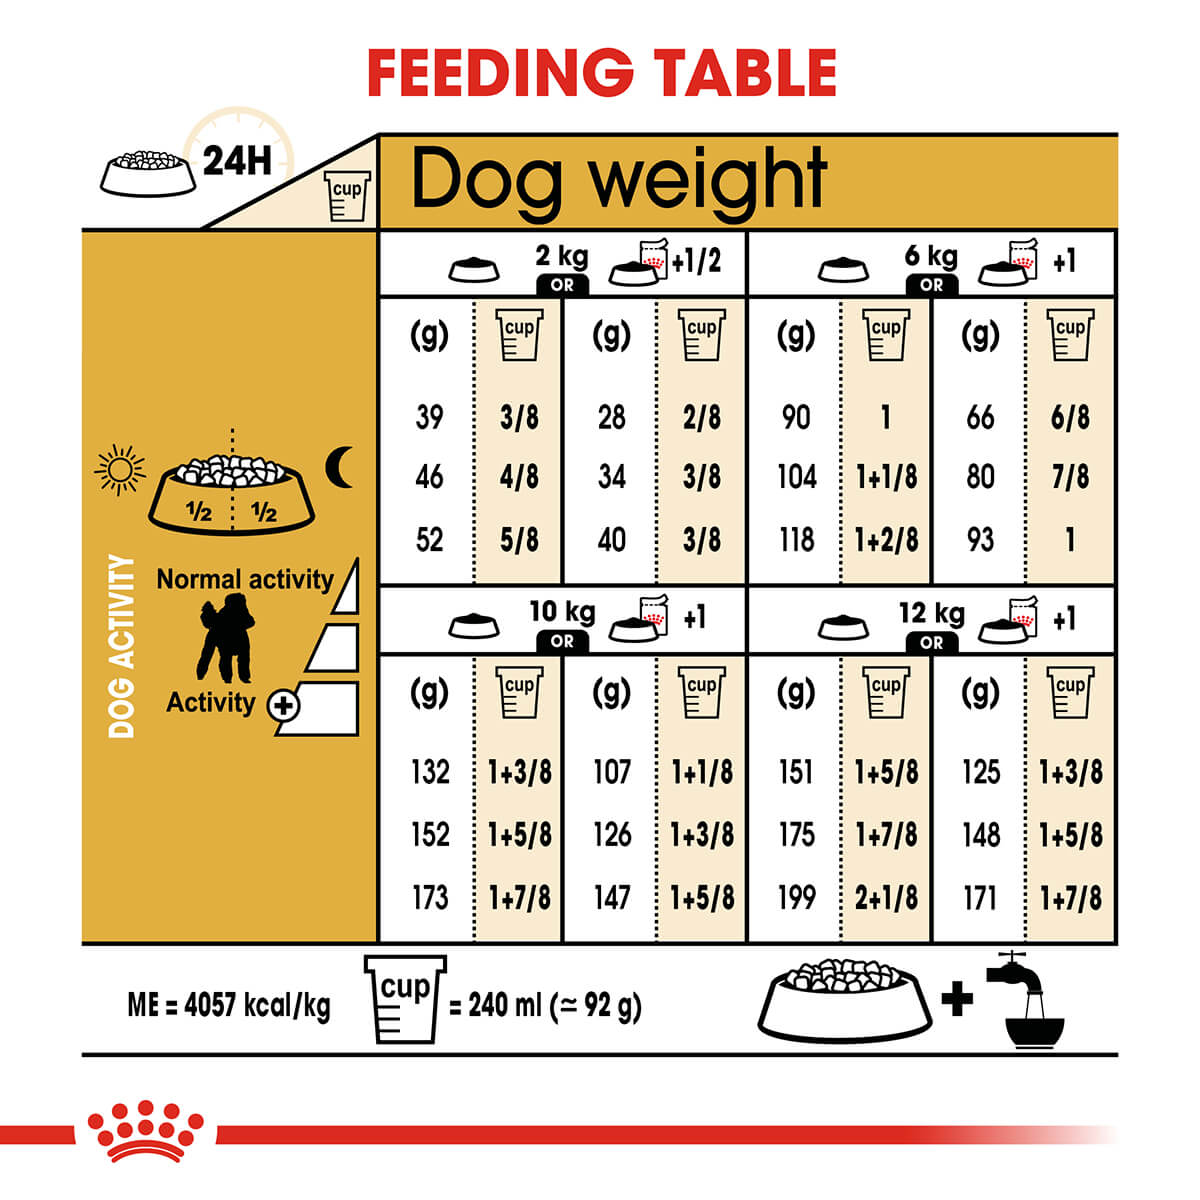 Royal Canin Poodle Adult Dry Dog Food (122725000059) [default_color]